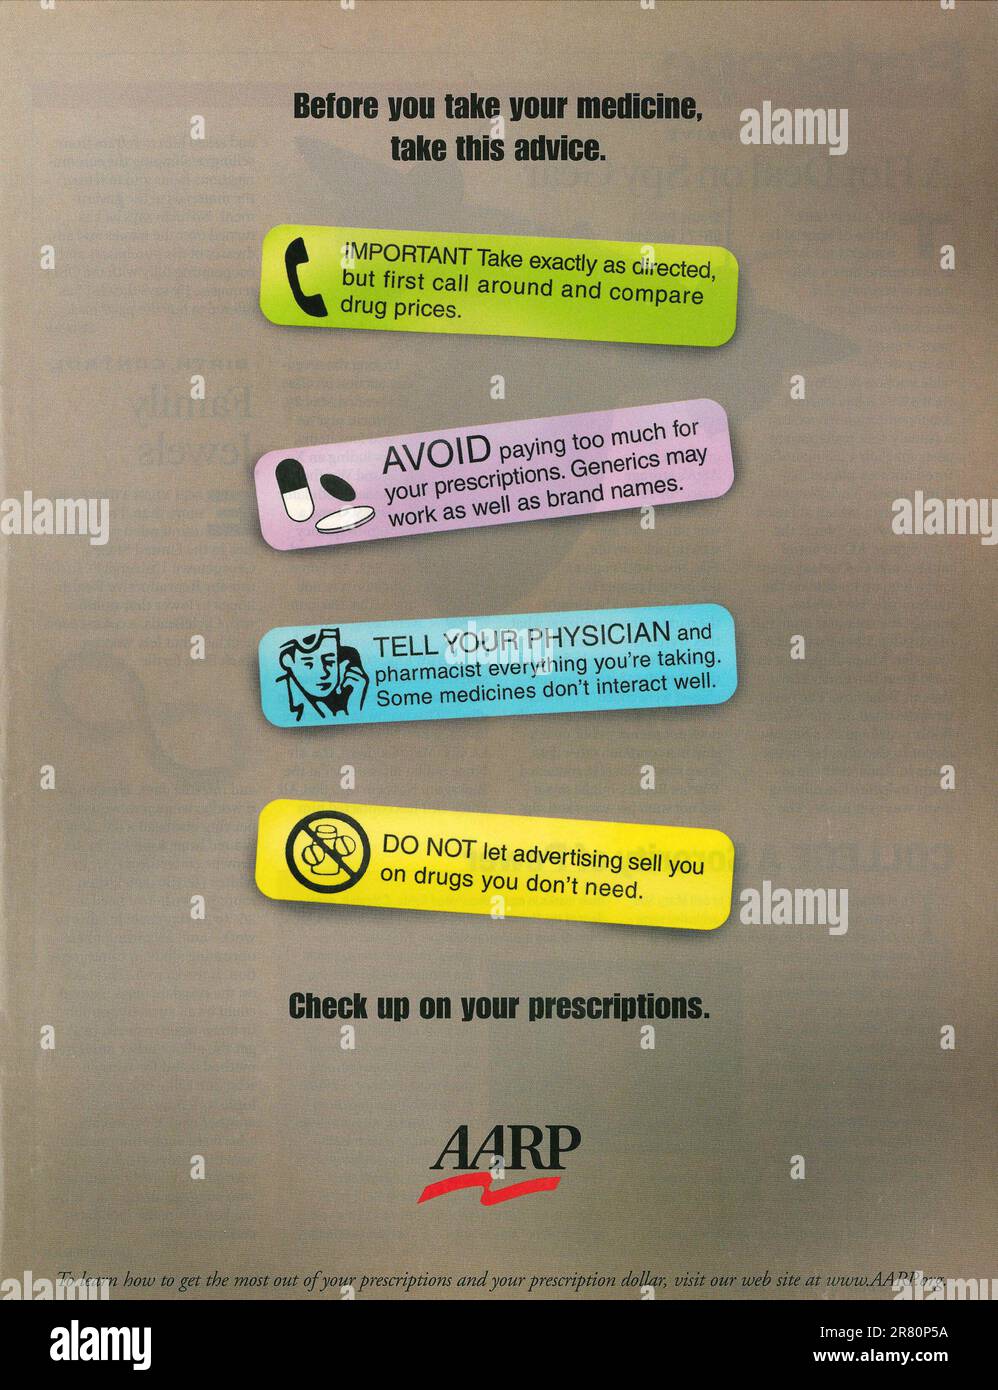 AARP organizzazione no-profit - Medicina, sanità per anziani annuncio in una rivista giugno 2002 Foto Stock